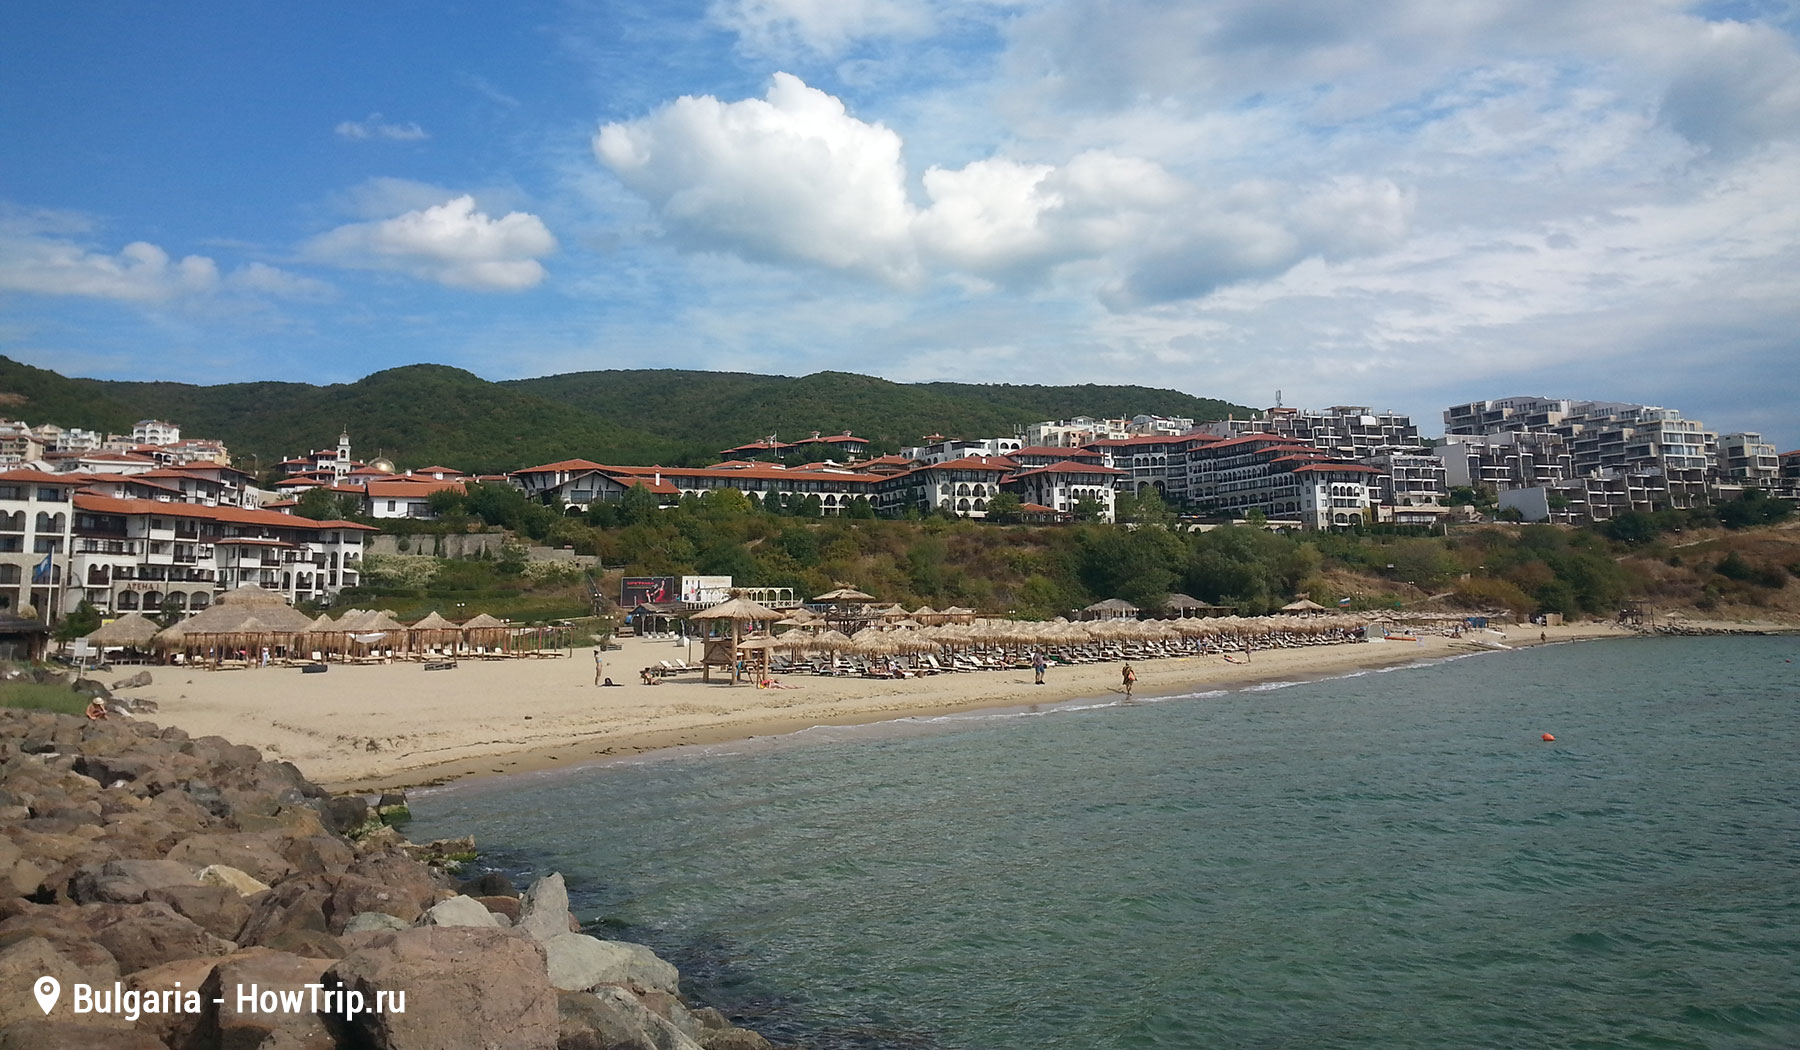 Пляж и отели у моря в Болгарии